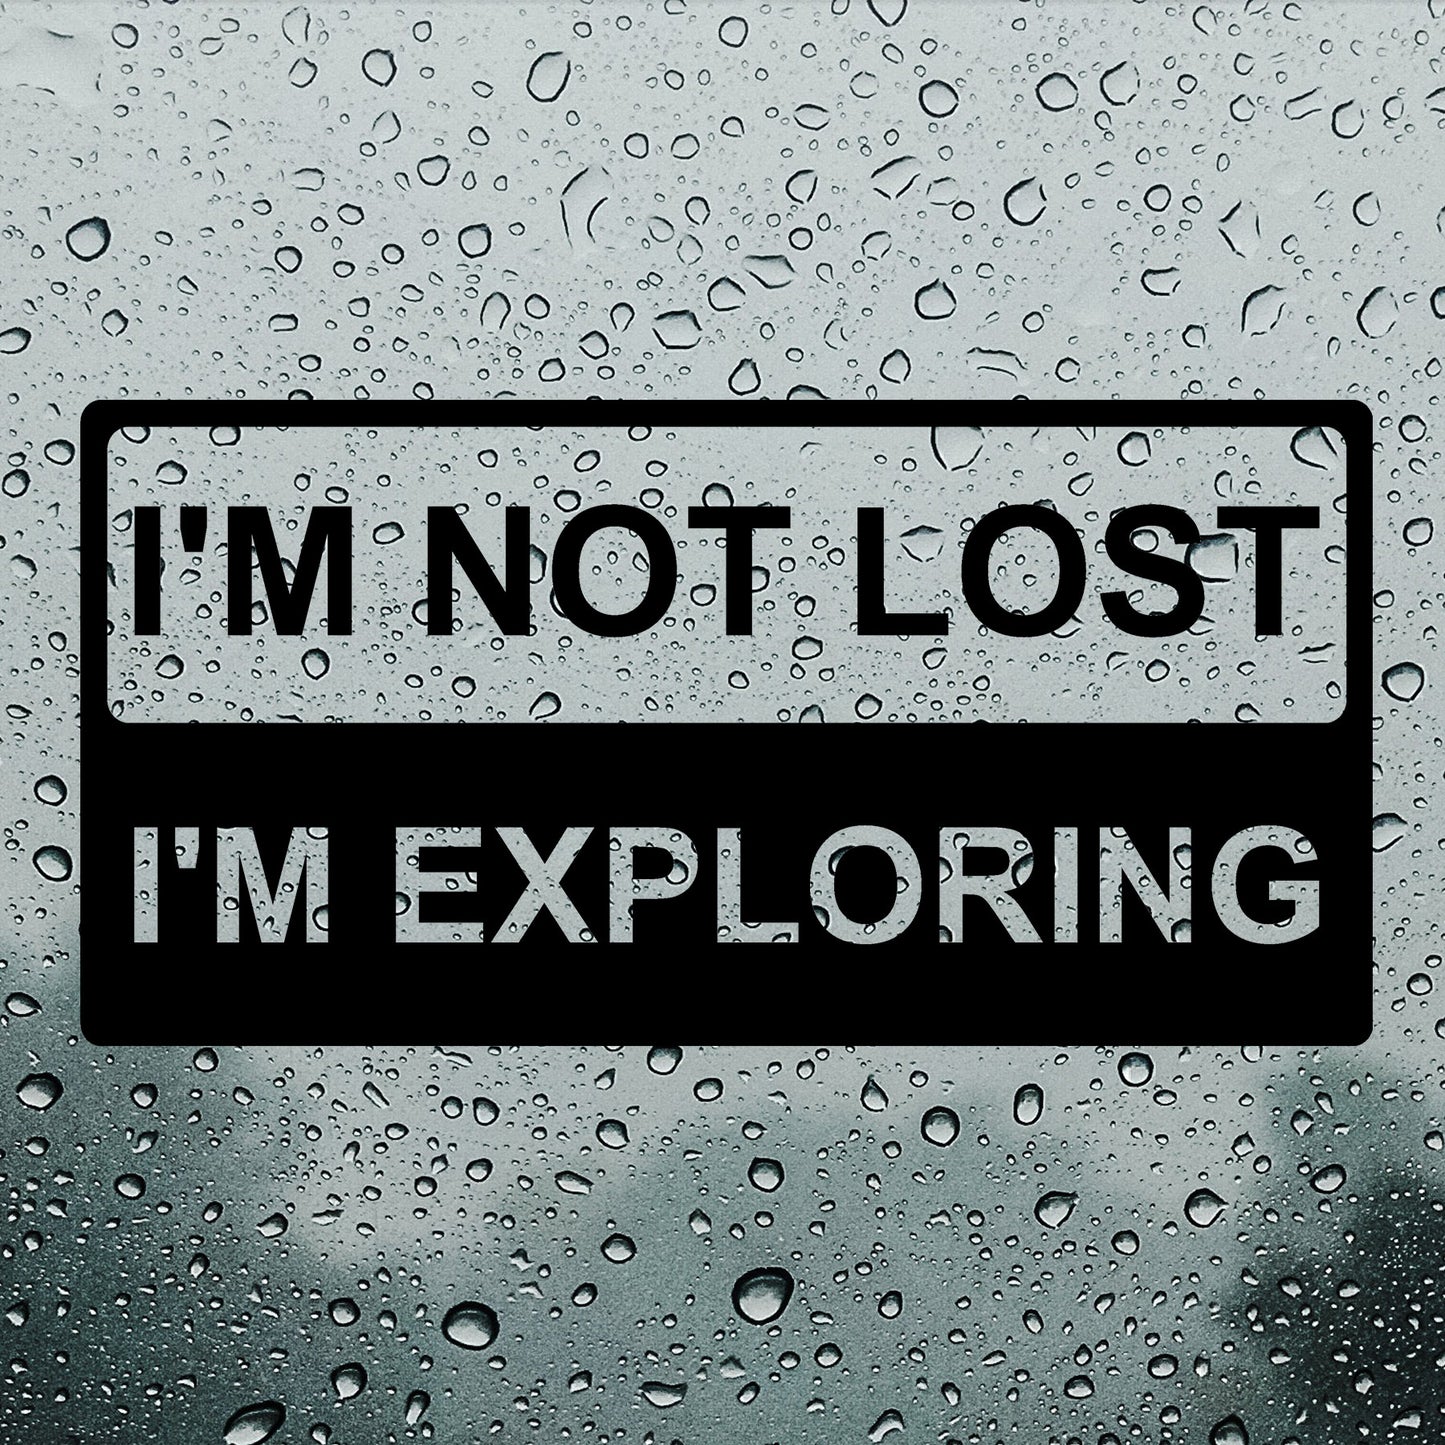 I'm not lost, I'm exploring | Bumper sticker - Adnil Creations